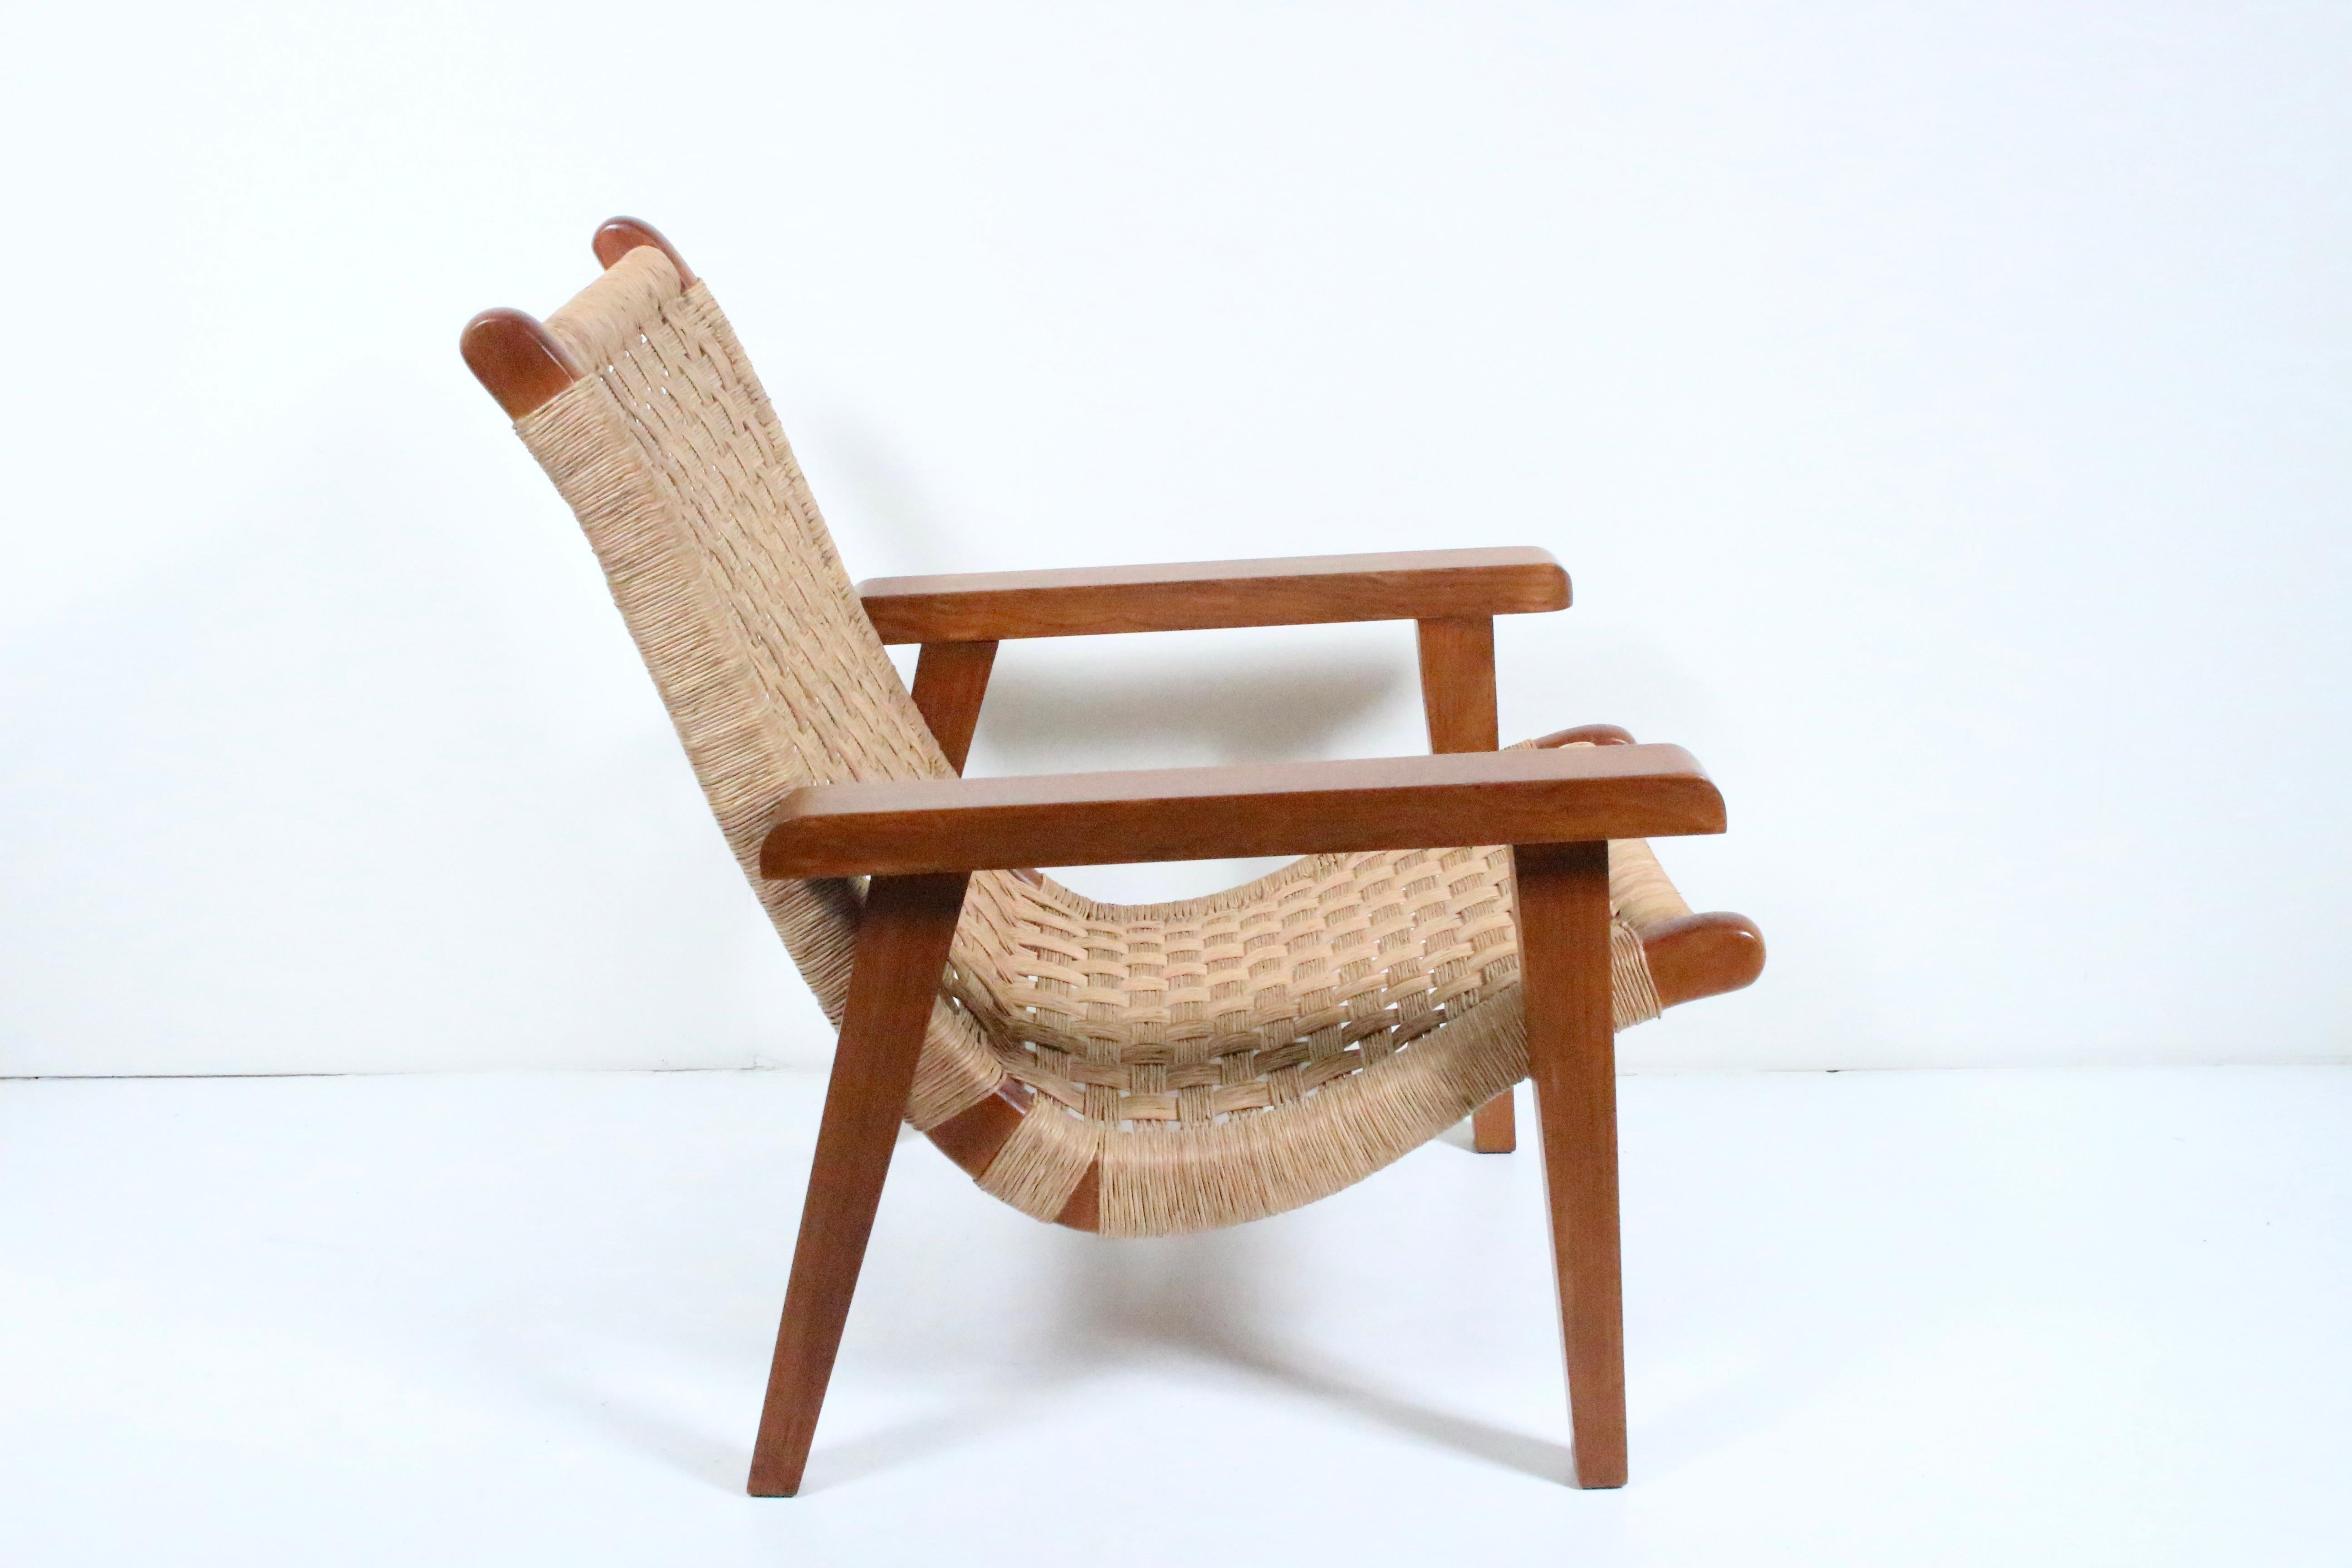 Mexican Modern Michael van Beuren Sessel aus Teakholz und geflochtenem Raffiabast. Mit einem robusten, funktionalen und komfortablen zweiteiligen Teakholzgestell, zwei Heringen zum Fixieren der Sitzfläche und einer mit Raffia umwickelten,